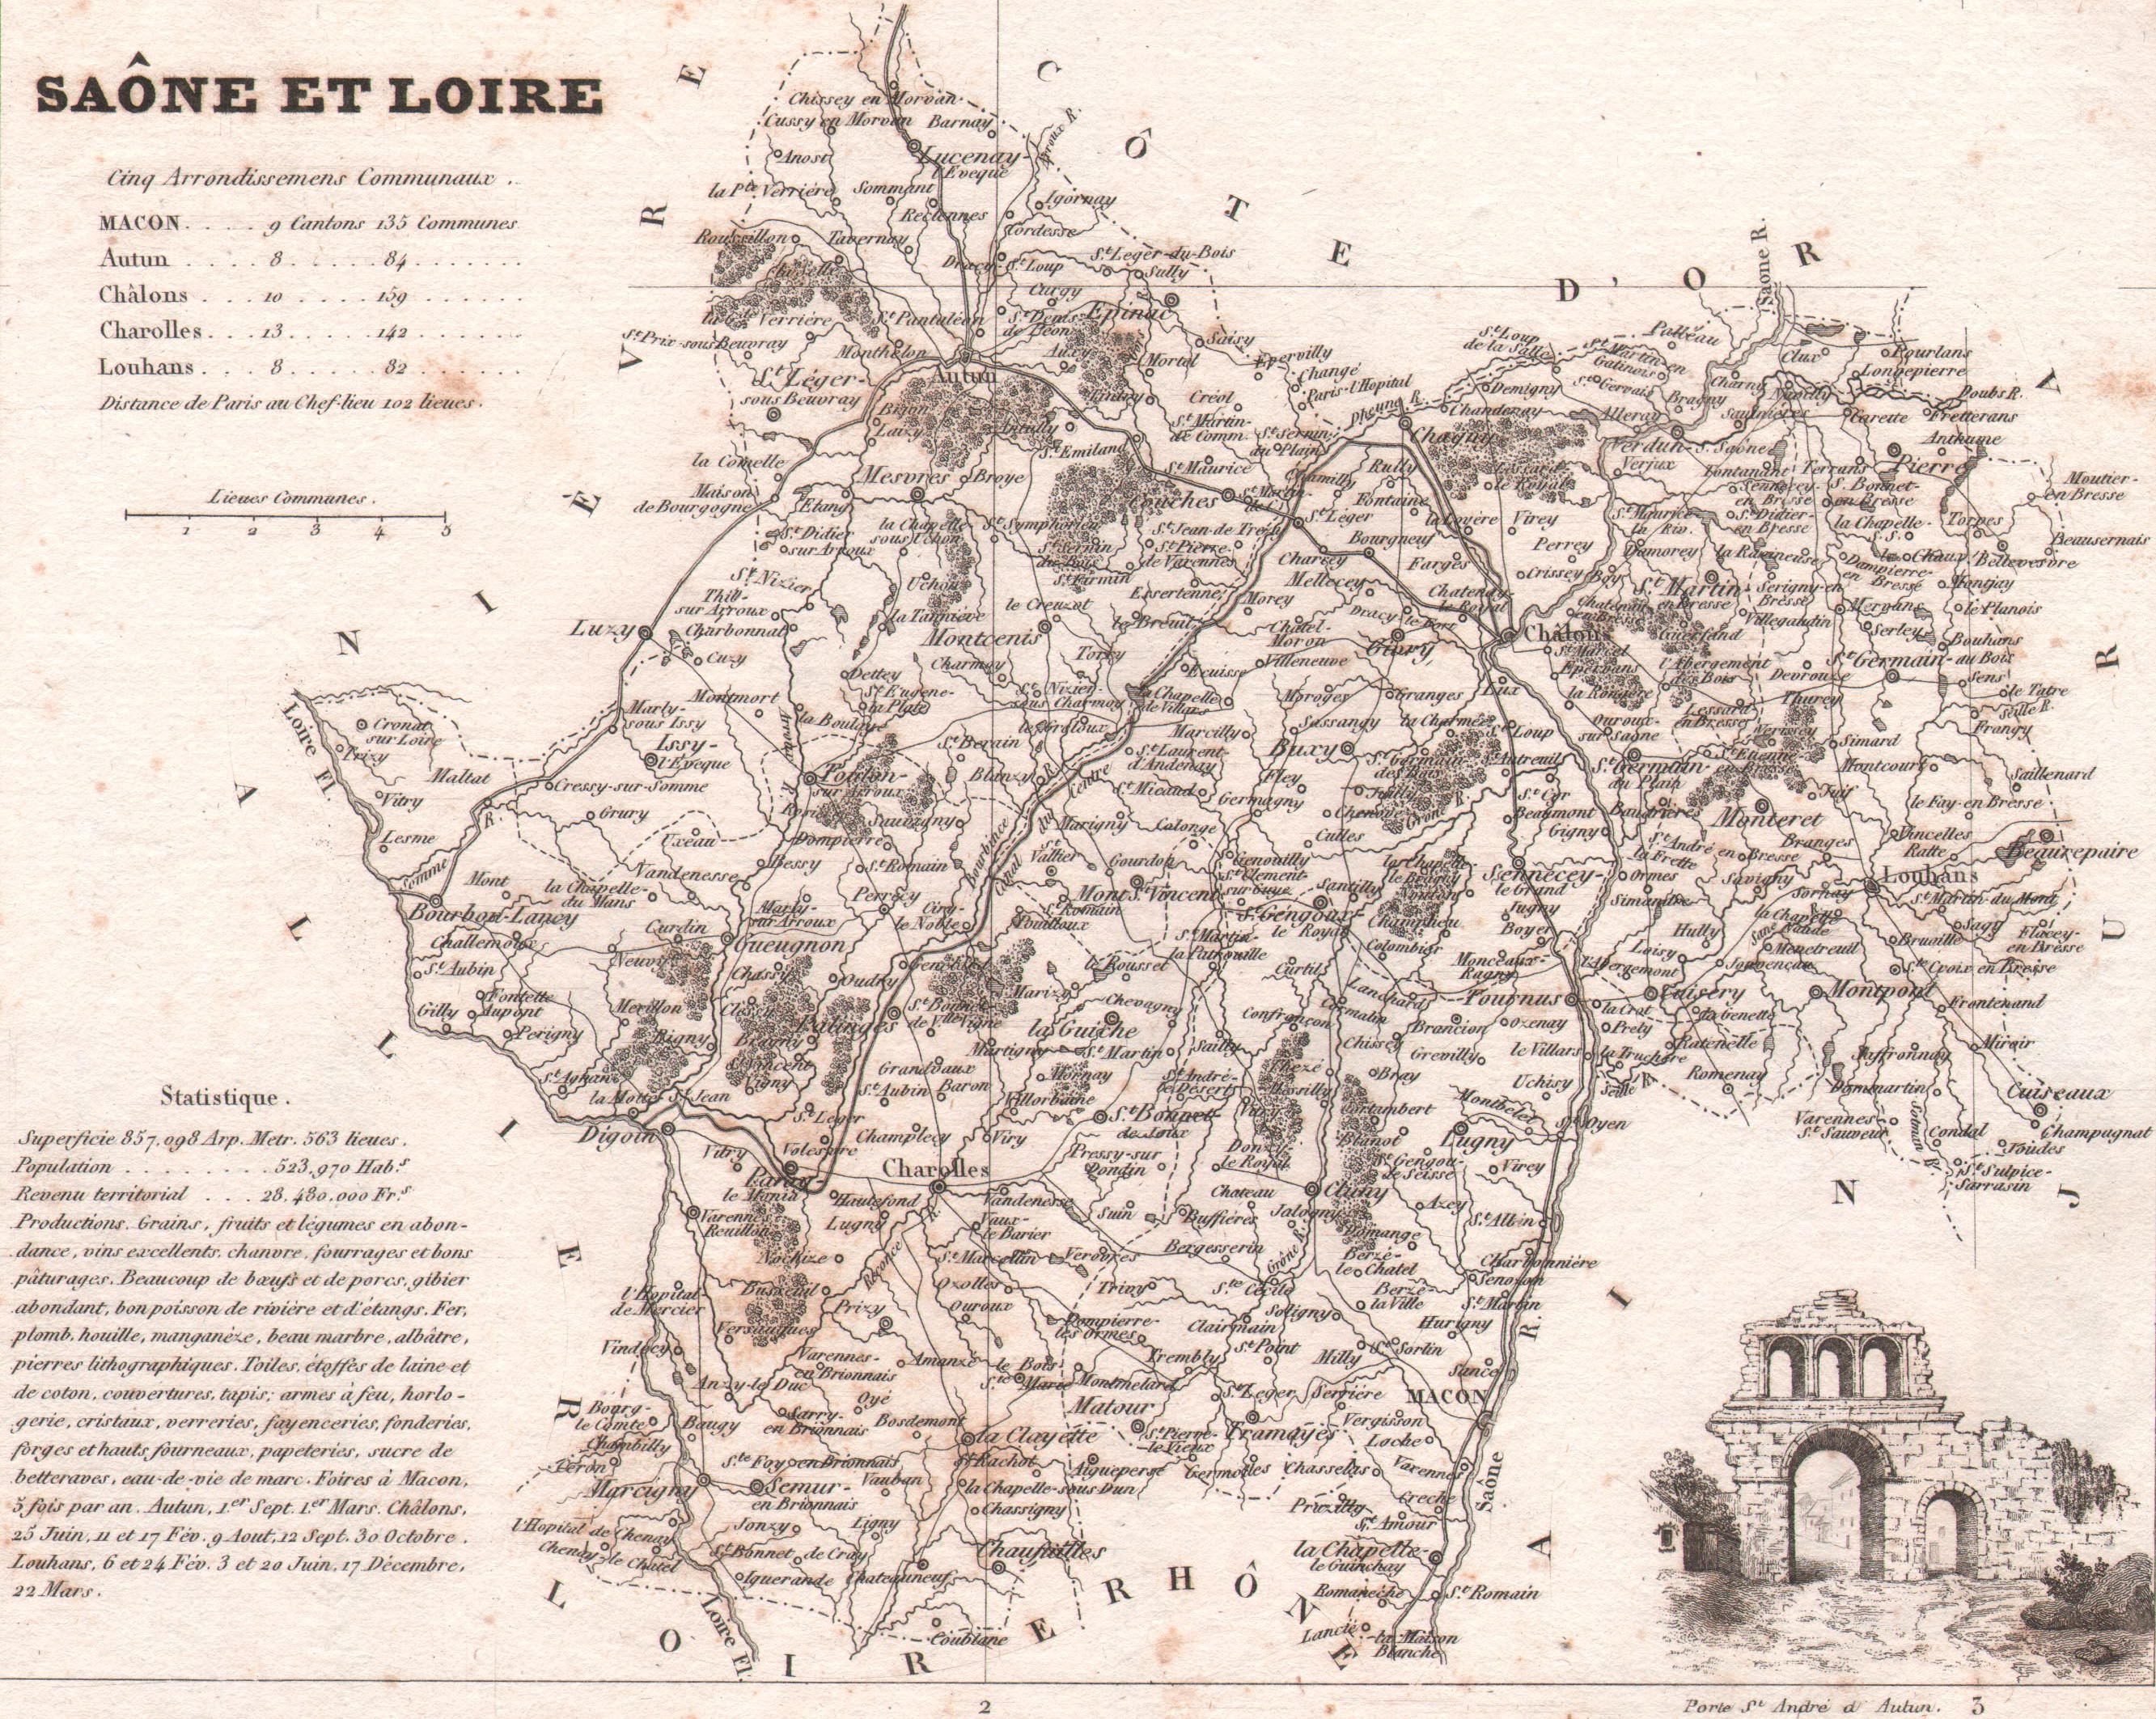 71 - Saône et Loire